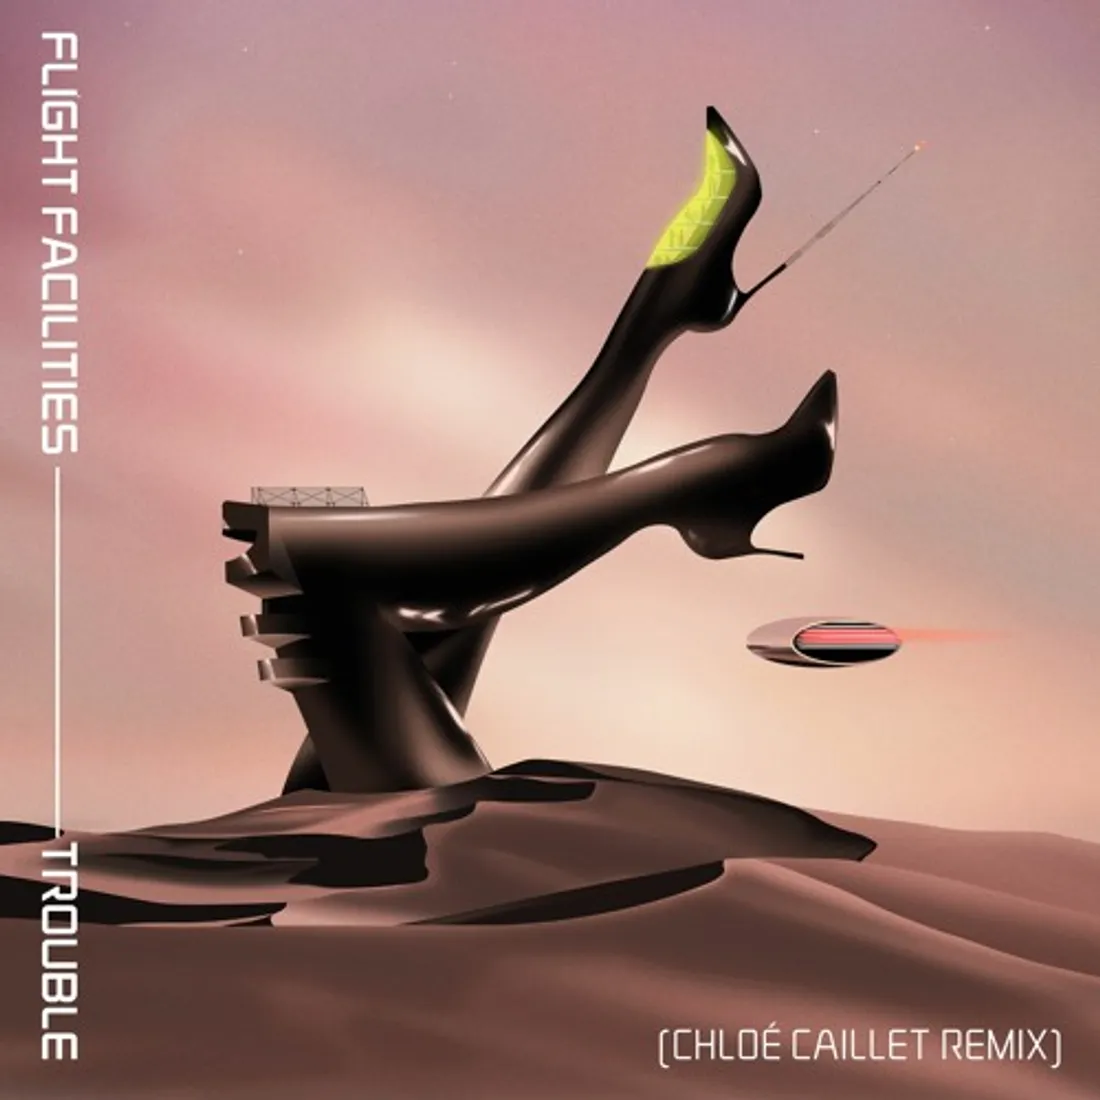 Flight Facilities - Trouble (Chloé Caillet remix)